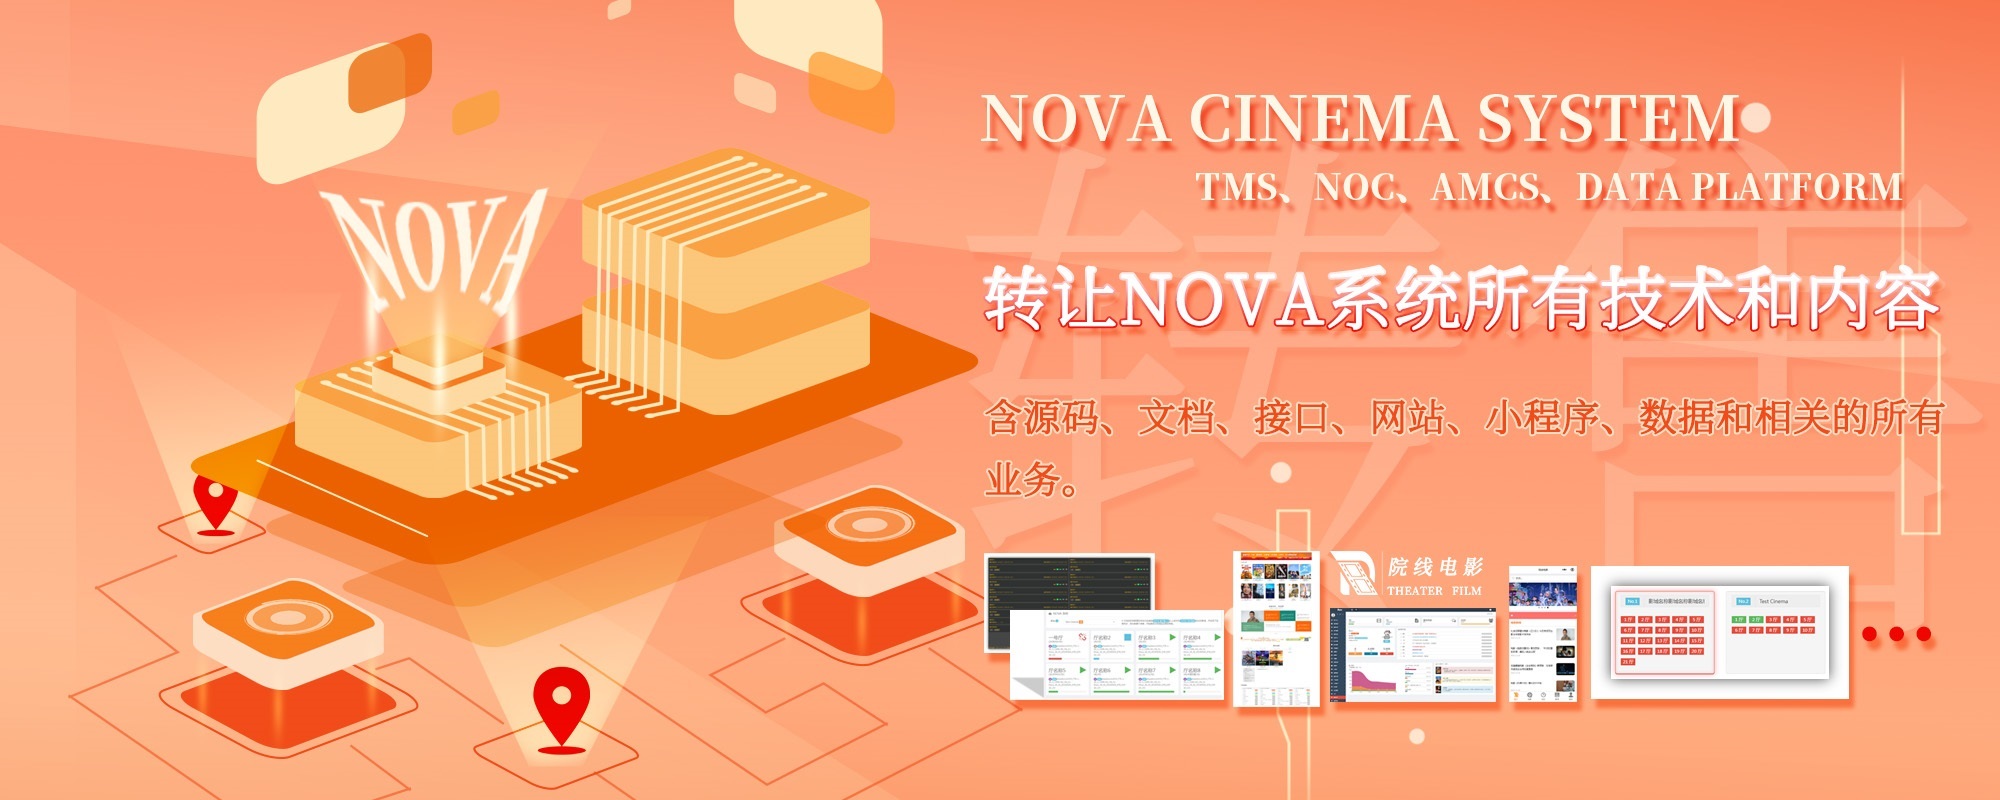 转让NOVA影院系统（NOVA CINEMA SYSTEM）所有技术和内容